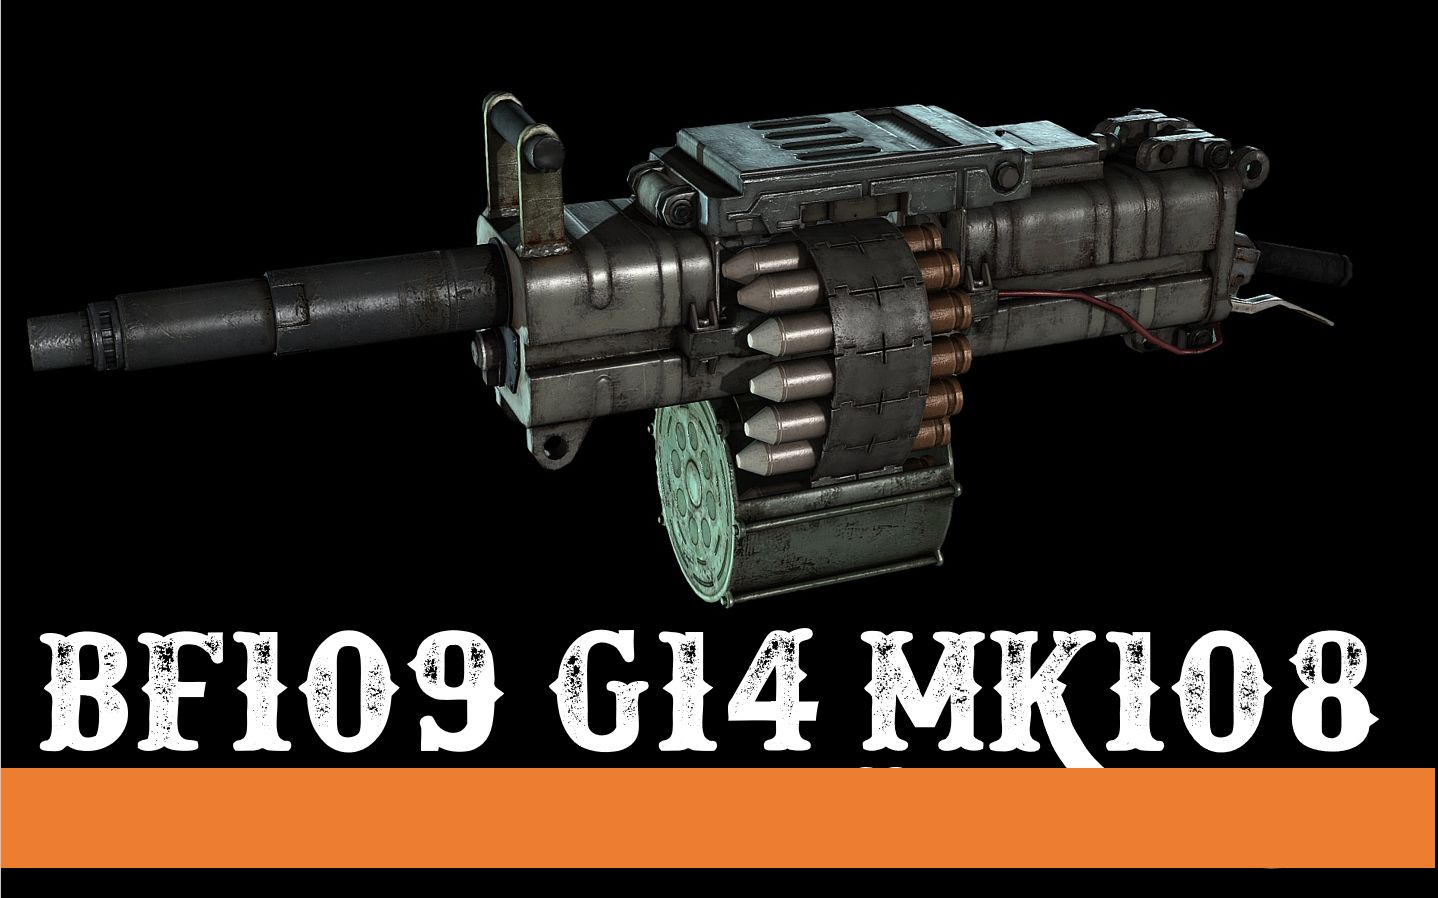 【IL2】BF109 MK108  机炮杀伤